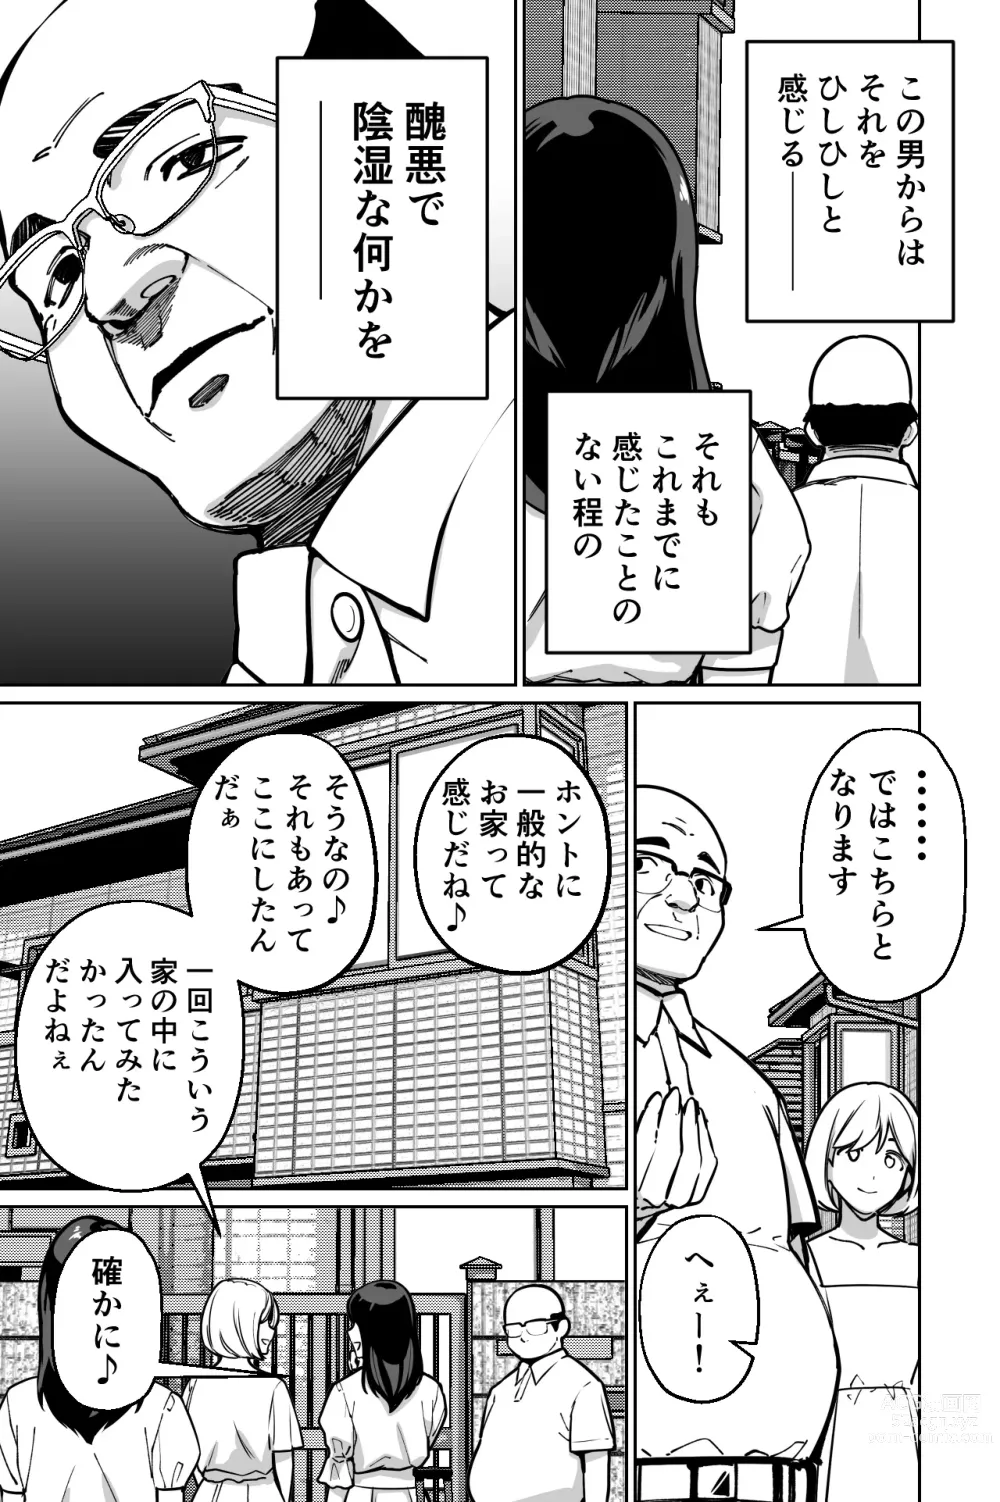 Page 11 of doujinshi Minpaku ~Ojou-sama-tachi wa Minpaku Keieisha no Wana ni Ochiru~